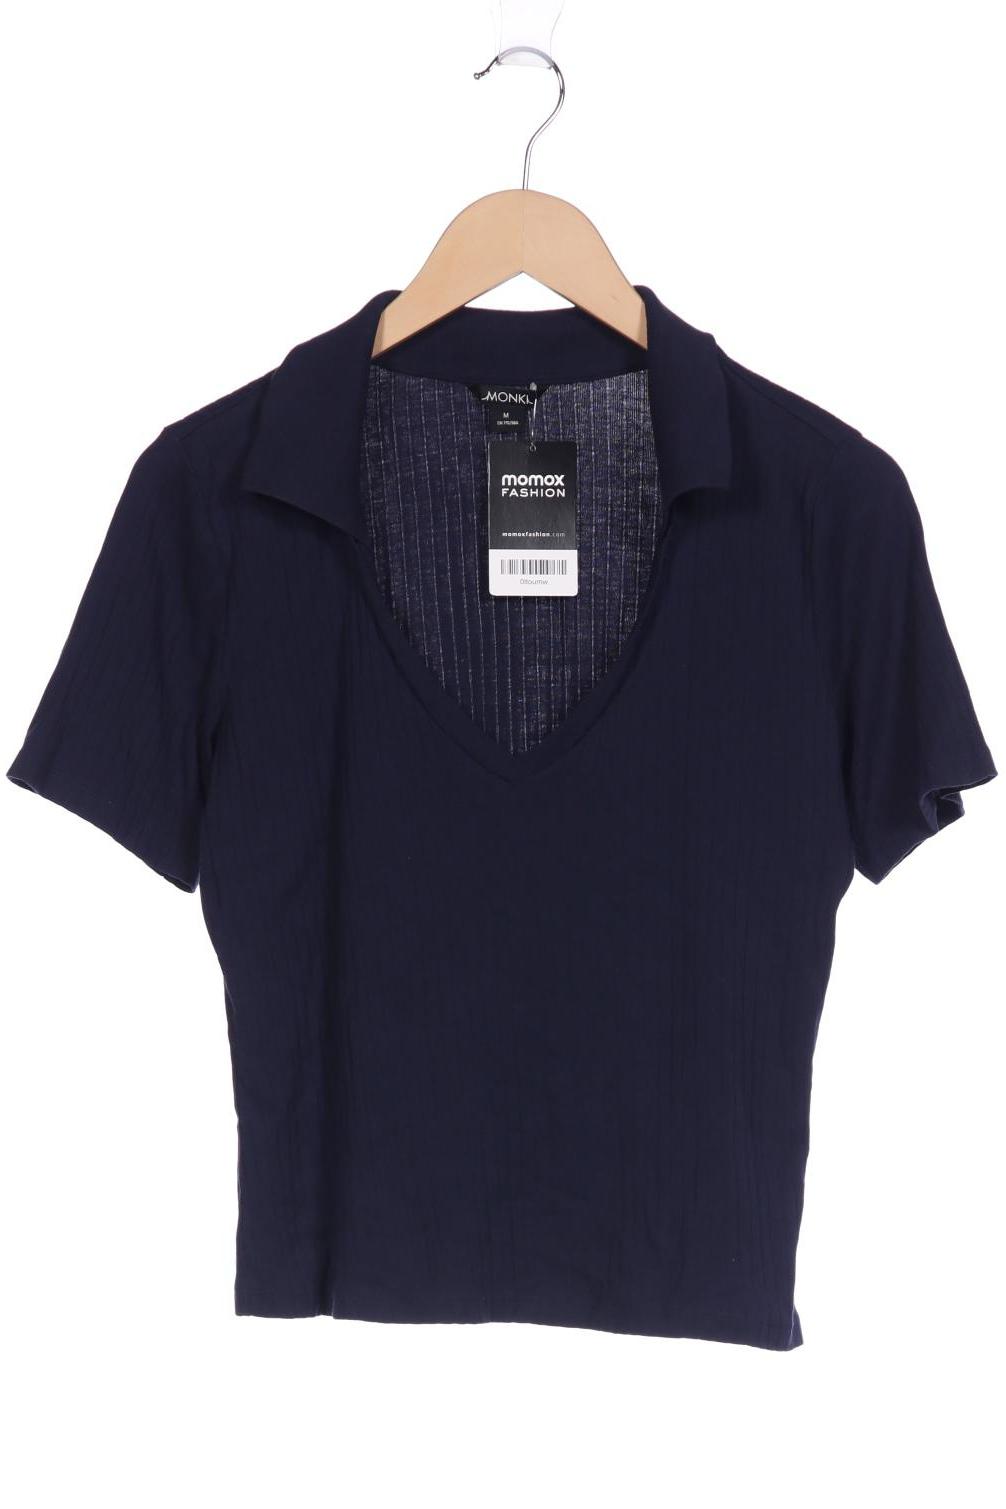 Monki Damen T-Shirt, marineblau, Gr. 38 von Monki